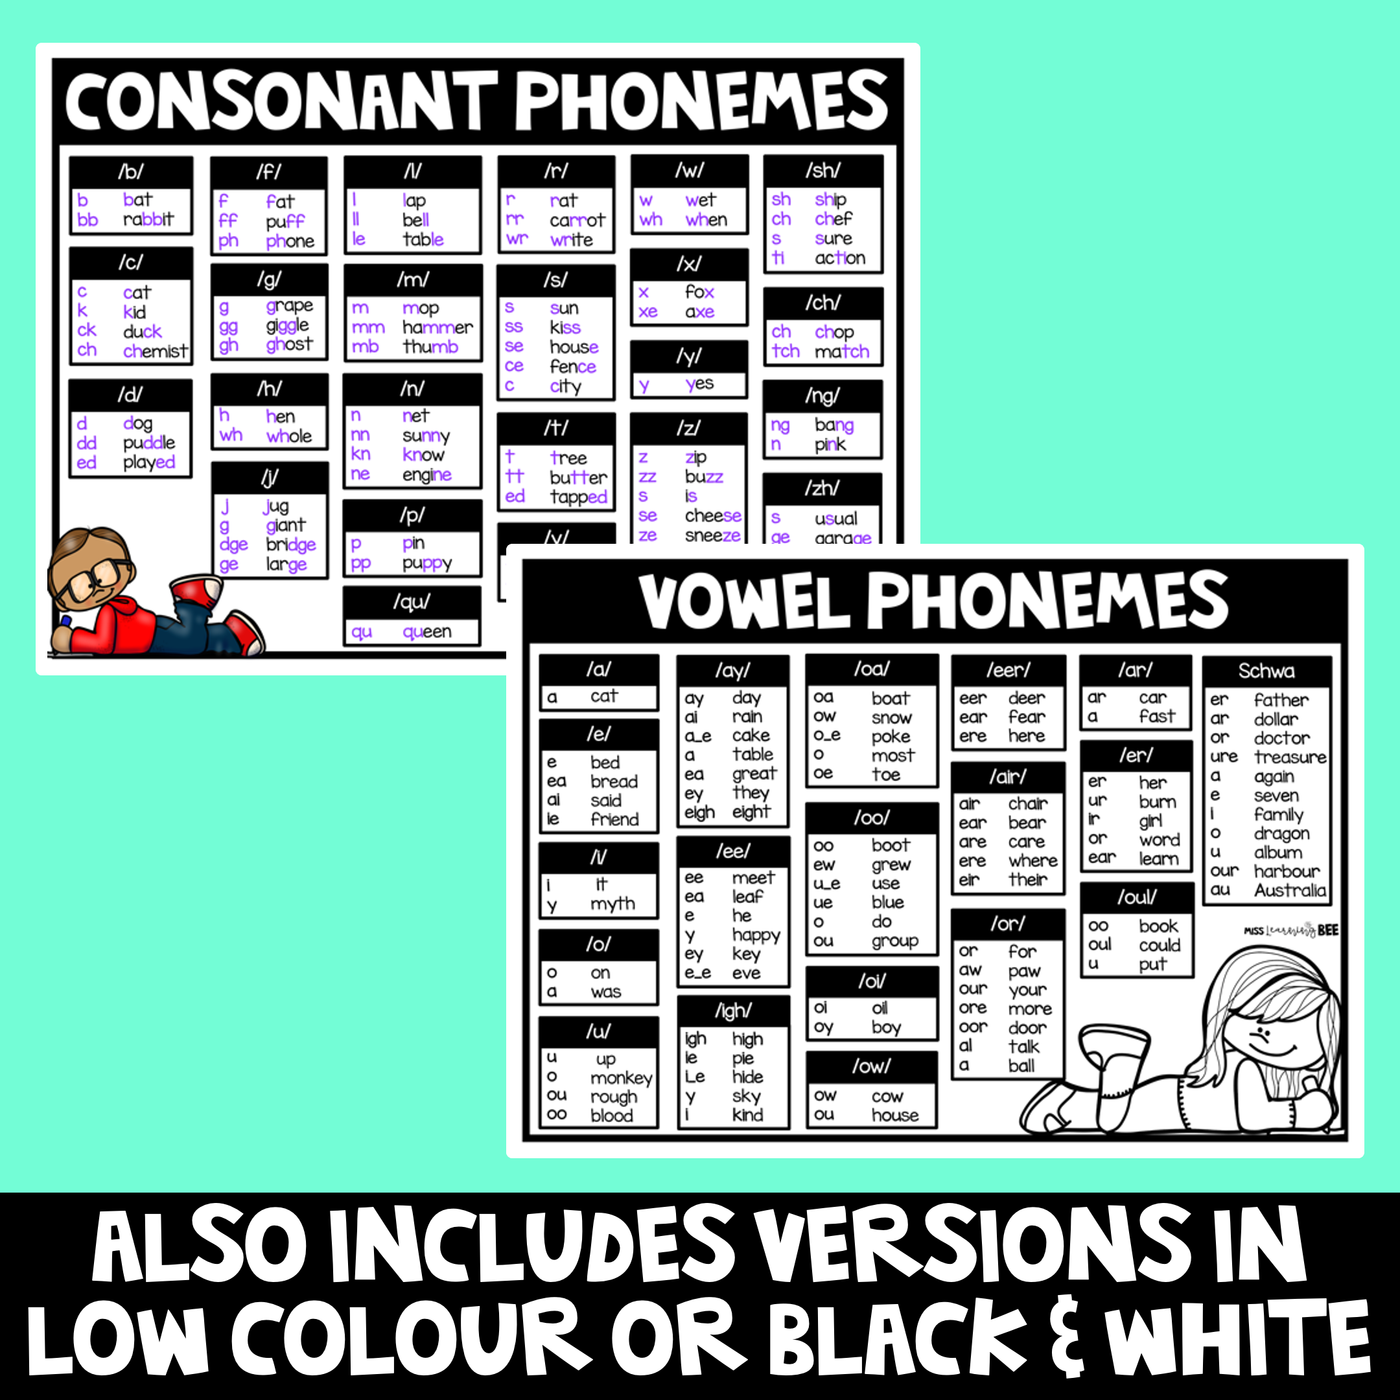 PHONICS CHART FREEBIE | Consonant Sounds & Vowel Sounds